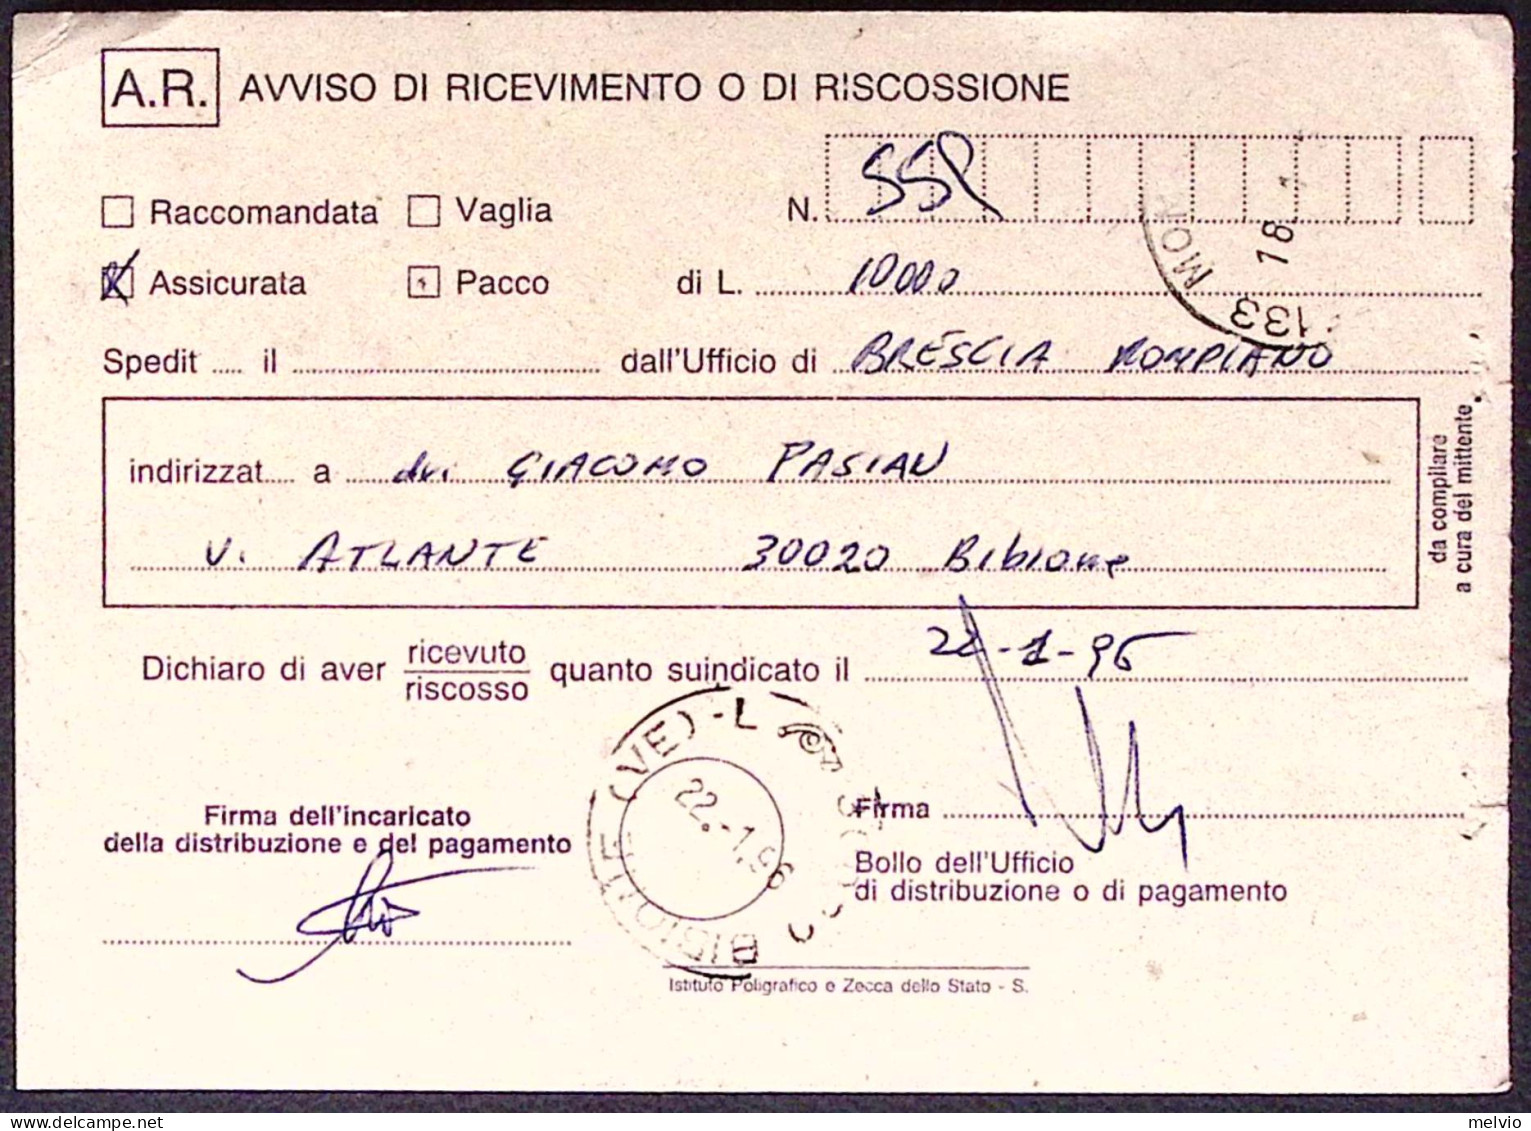 1996-AVVENIMENTI STORICI Battaglia Di Monte Lungo Lire 750 Isolato Su Avviso Ric - 1991-00: Marcophilie